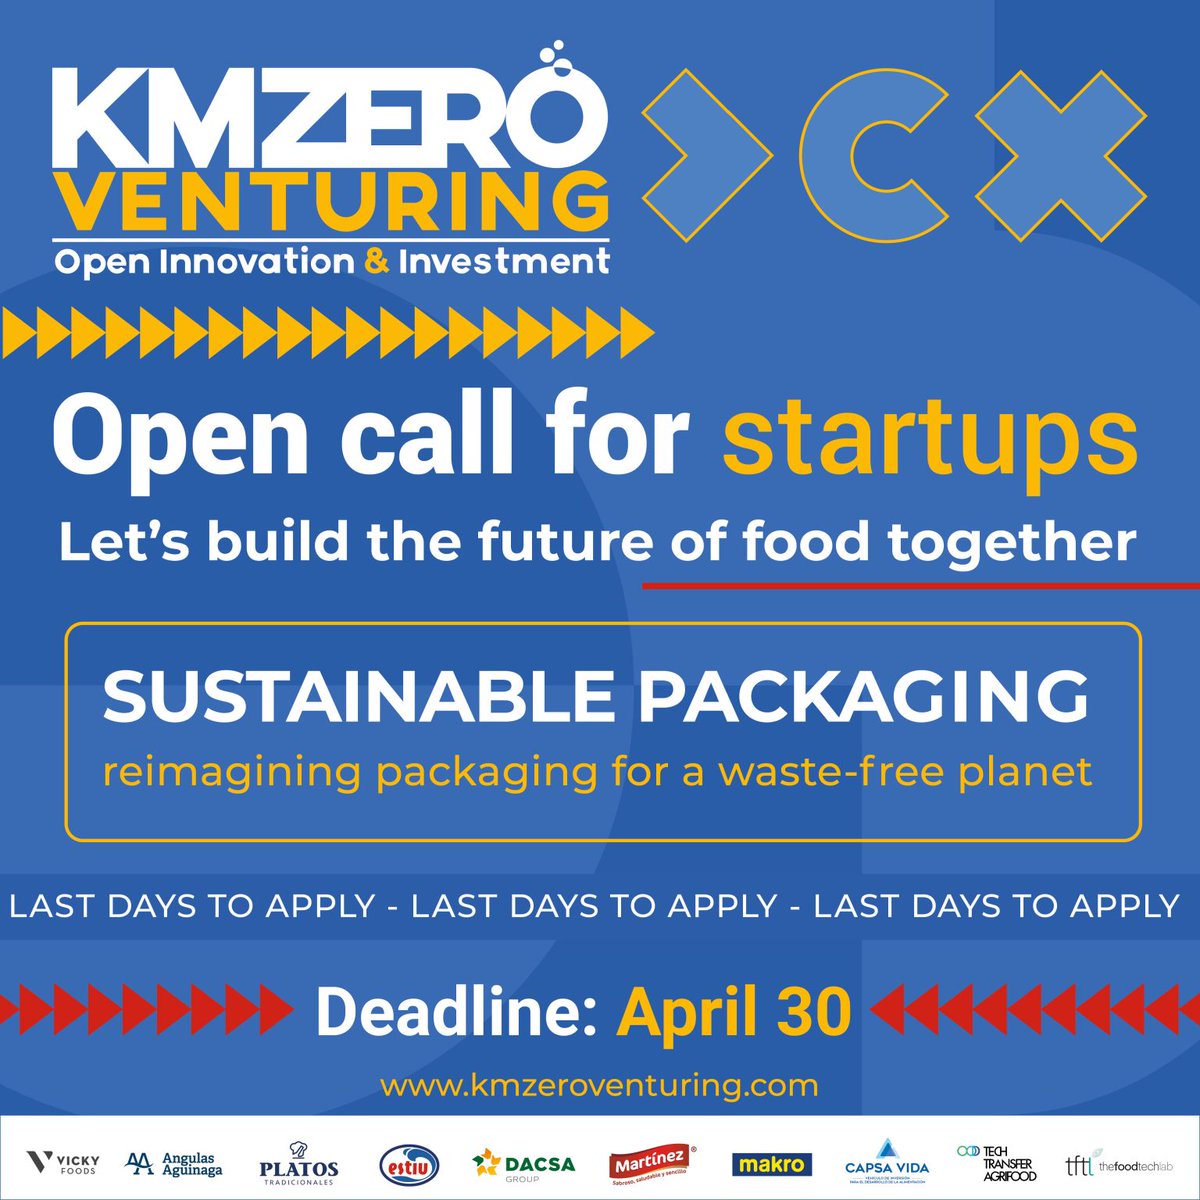 📣 ¡Solo falta 1 día para aplicar al reto ''Packaging sostenible'! Buscamos #startups foodtech con soluciones innovadoras. 👥Conéctate con líderes de la industria y accede a oportunidades de #inversión. 👉kmzeroventuring.com 🔴Deadline: 30 de abril. #opencall #foodtech